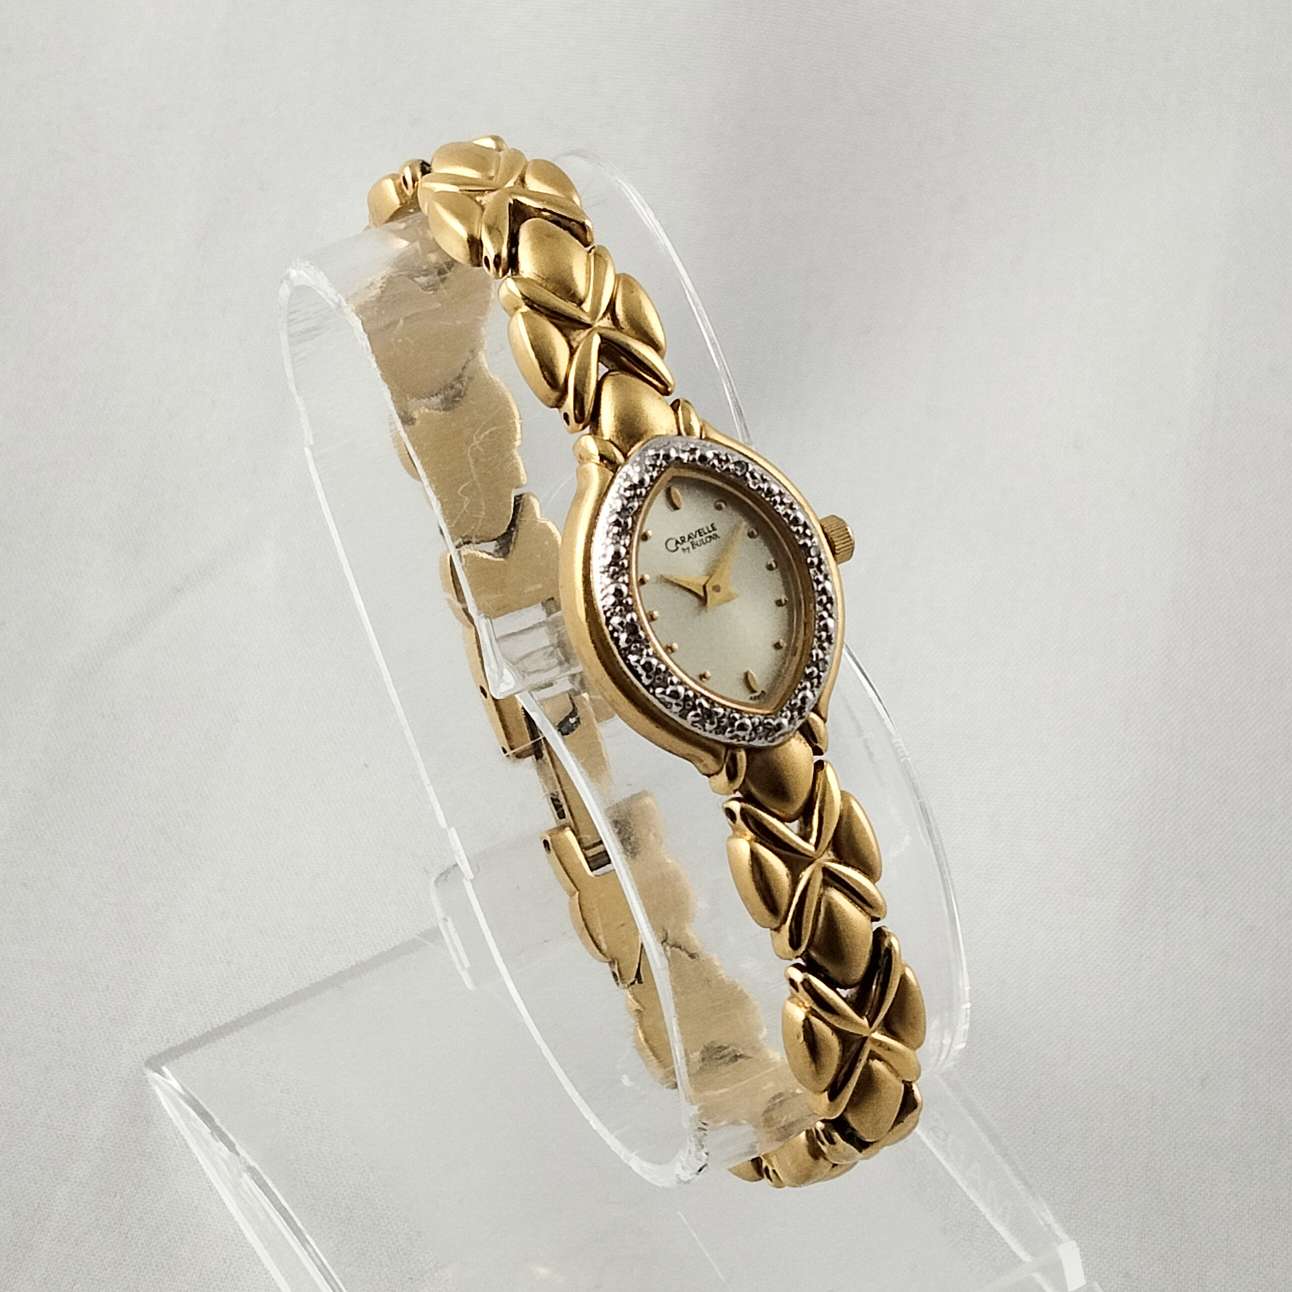 Carvelle by Bulova Gold Tone Watch, Linked Bracelet Strap